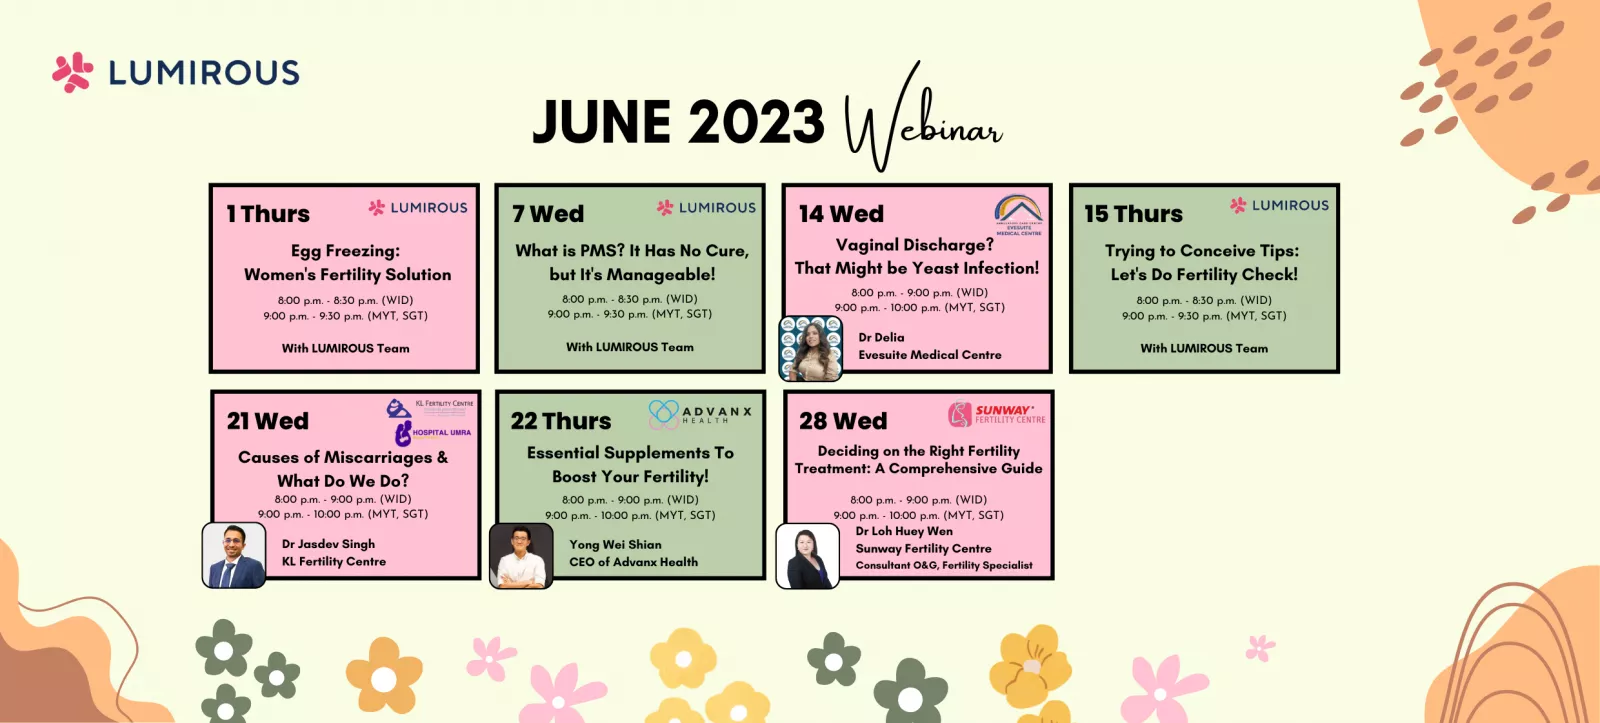 LUMIROUS June 2023 Webinar Calendar